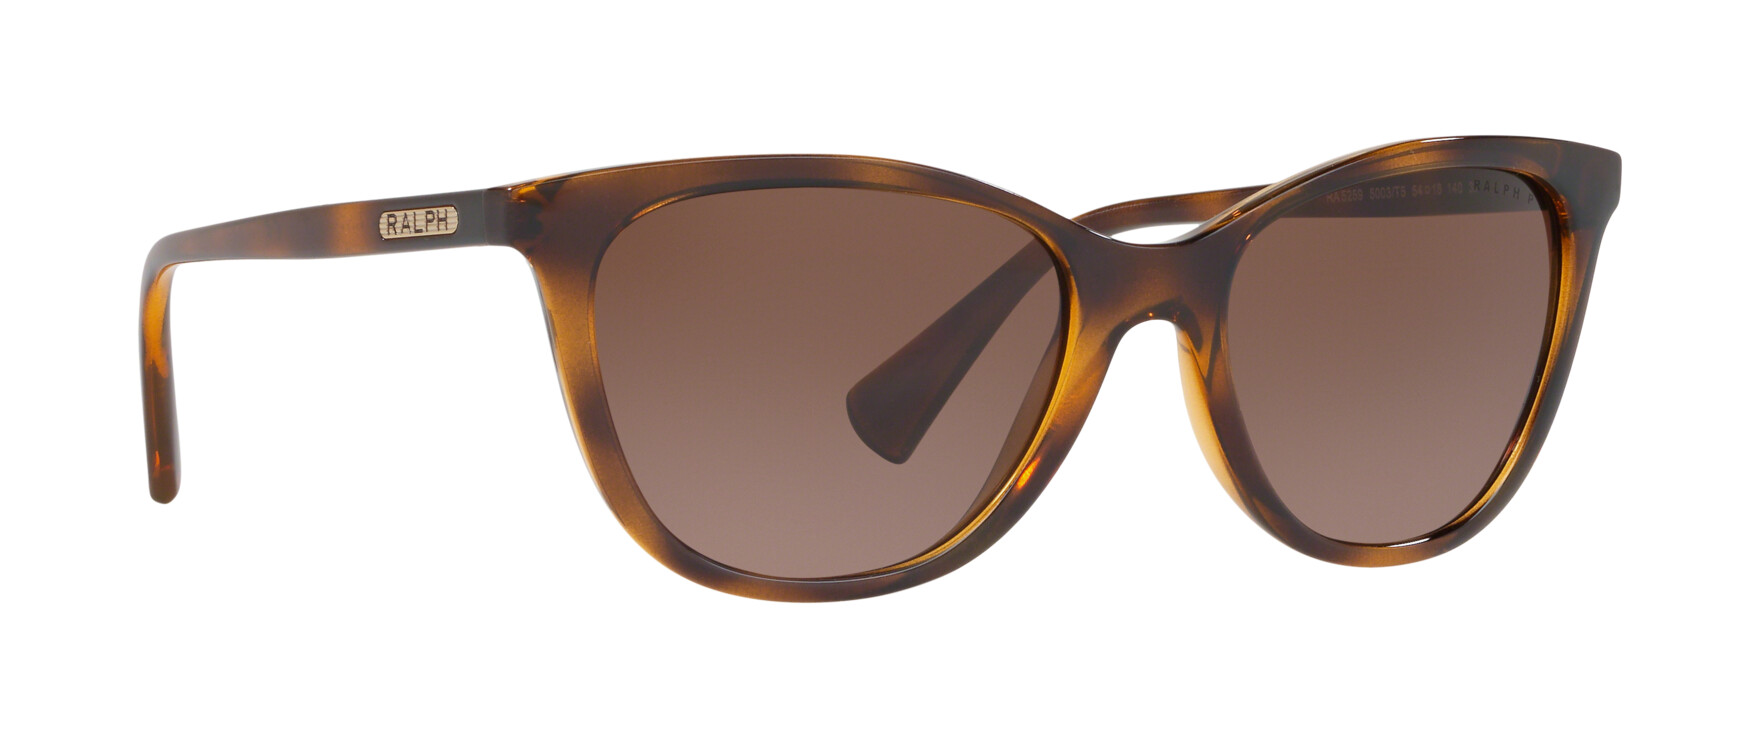 [products.image.detail01] Ralph Lauren 0RA5259 5003T5 Sonnenbrille